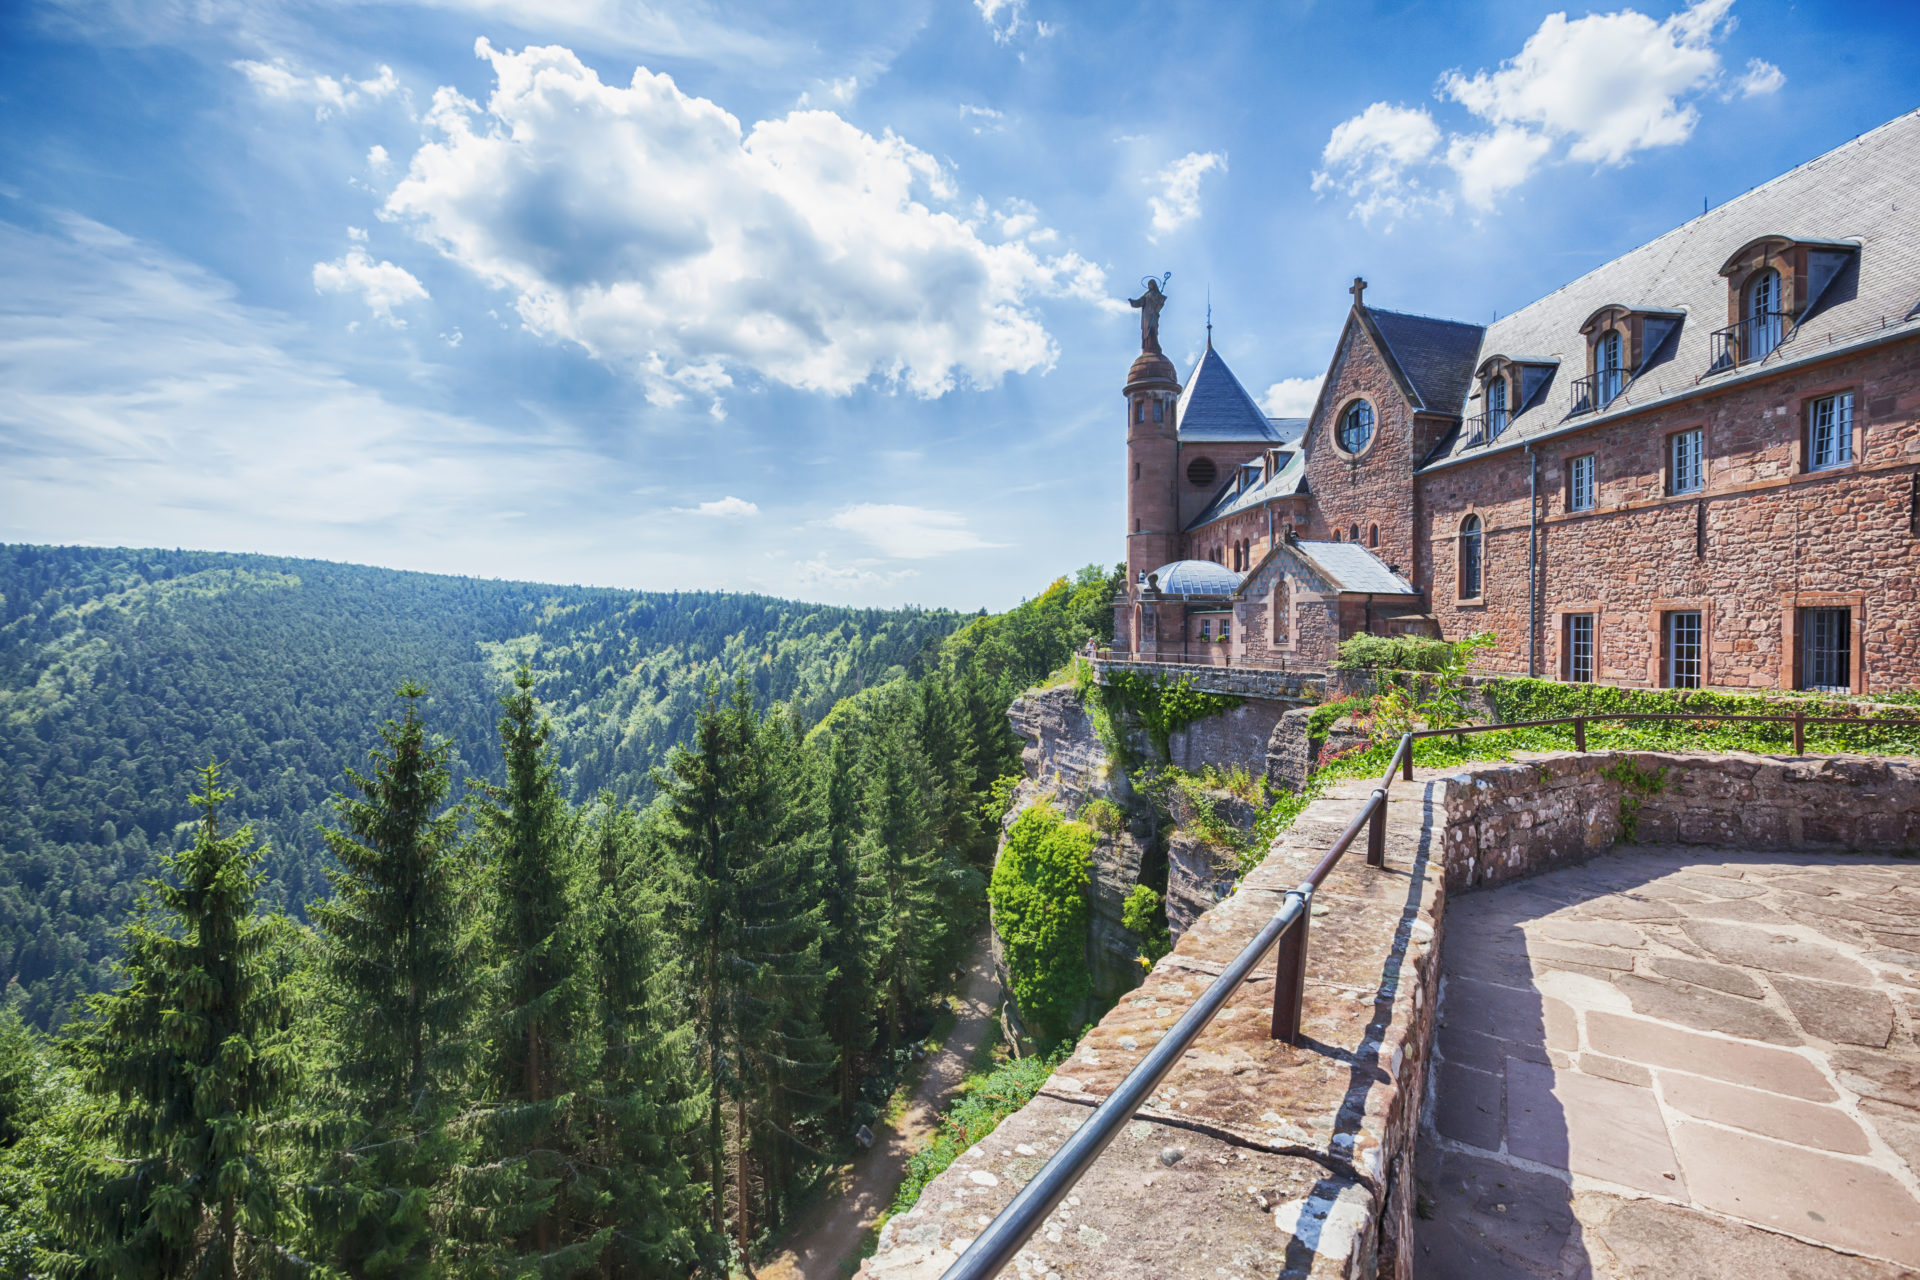 Edifié au XIIe siècle, dressé à près de 800 mètres d’altitude sur un éperon rocheux, le château offre un panorama grandiose sur la plaine d’Alsace, les vallées et les ballons des Vosges, la Forêt-Noire, et par temps clair, les Alpes…